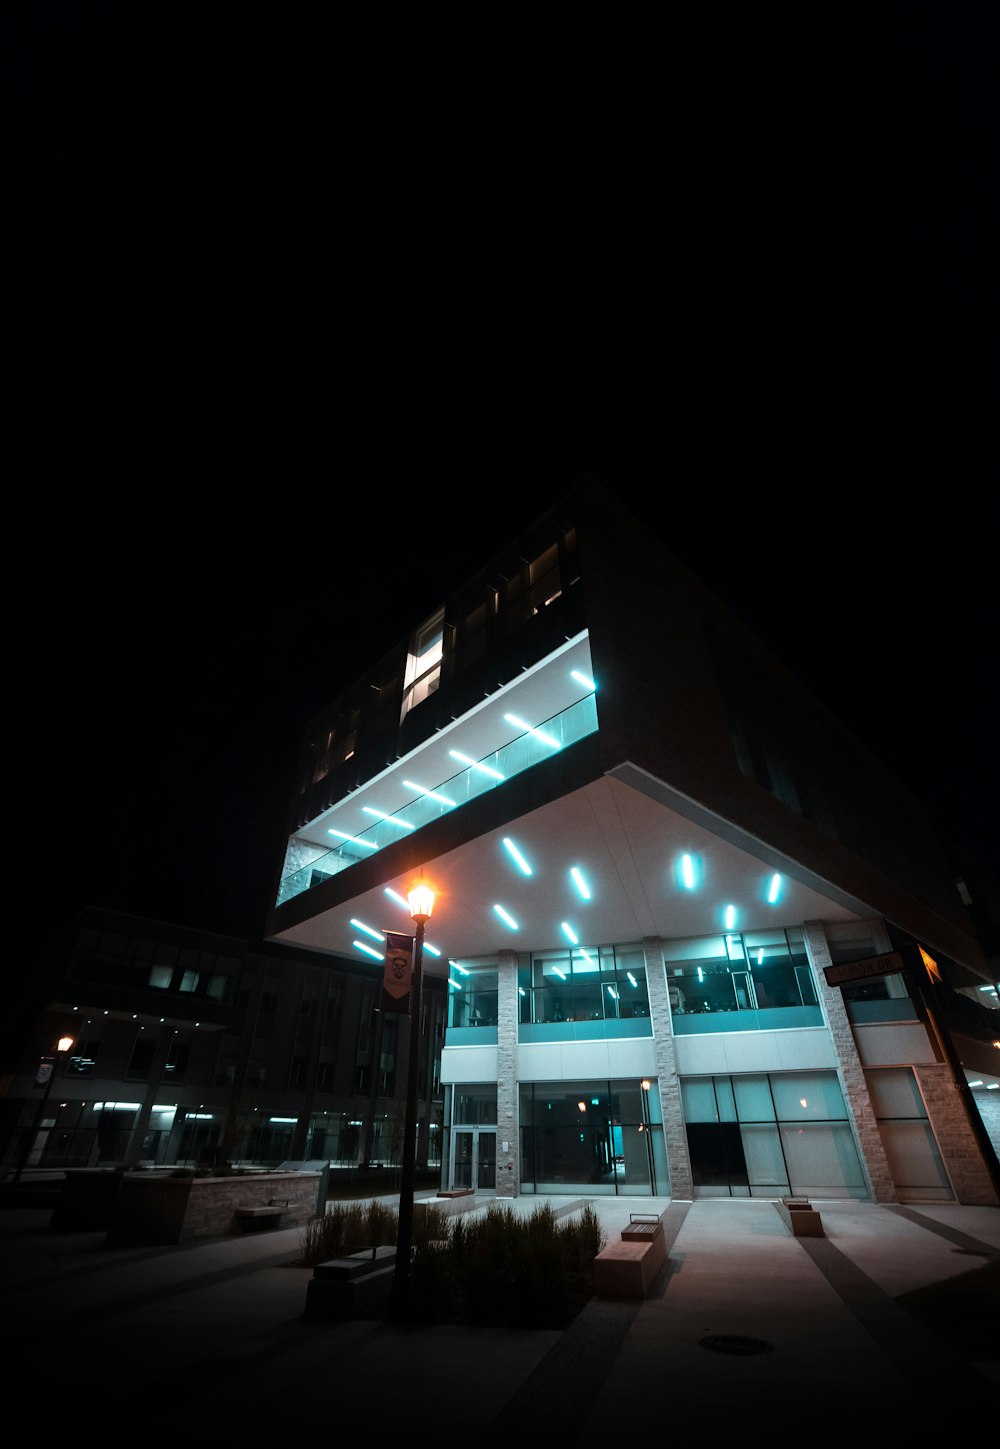 Außenansicht eines mehrstöckigen Gebäudes während der Nacht